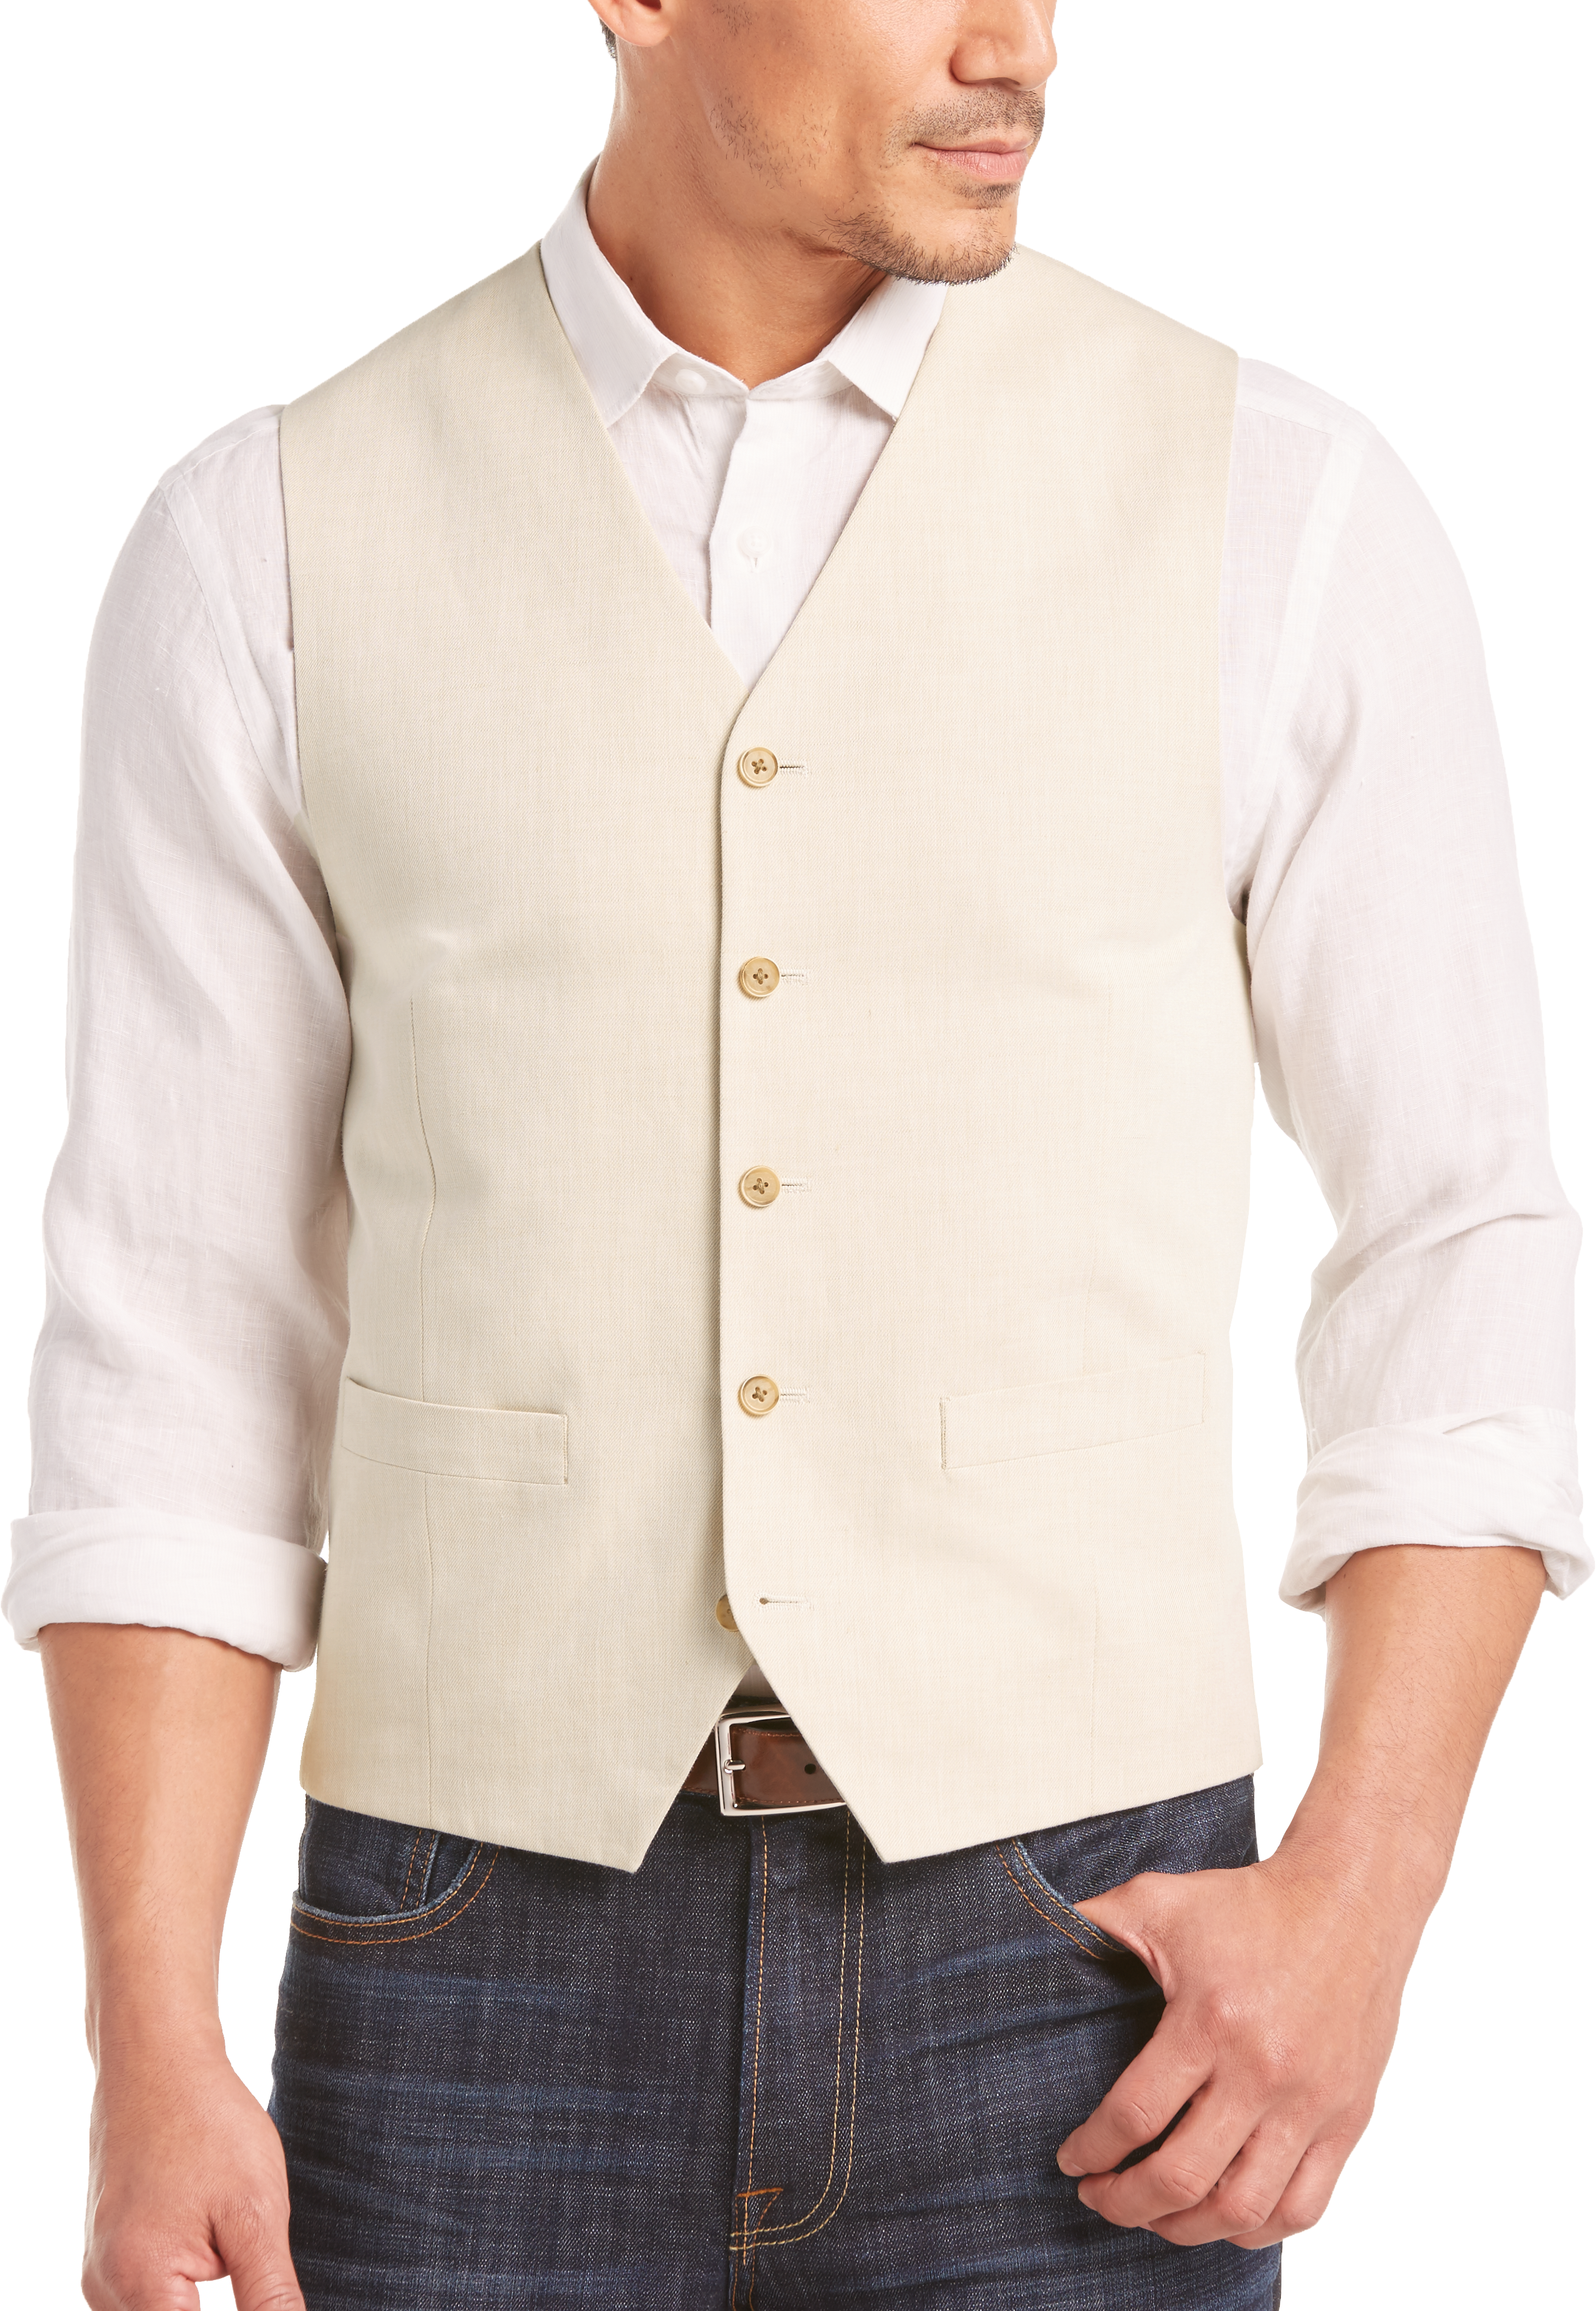 Joseph Abboud Light Tan Modern Fit Linen Vest - Men's Tailored Vests ...